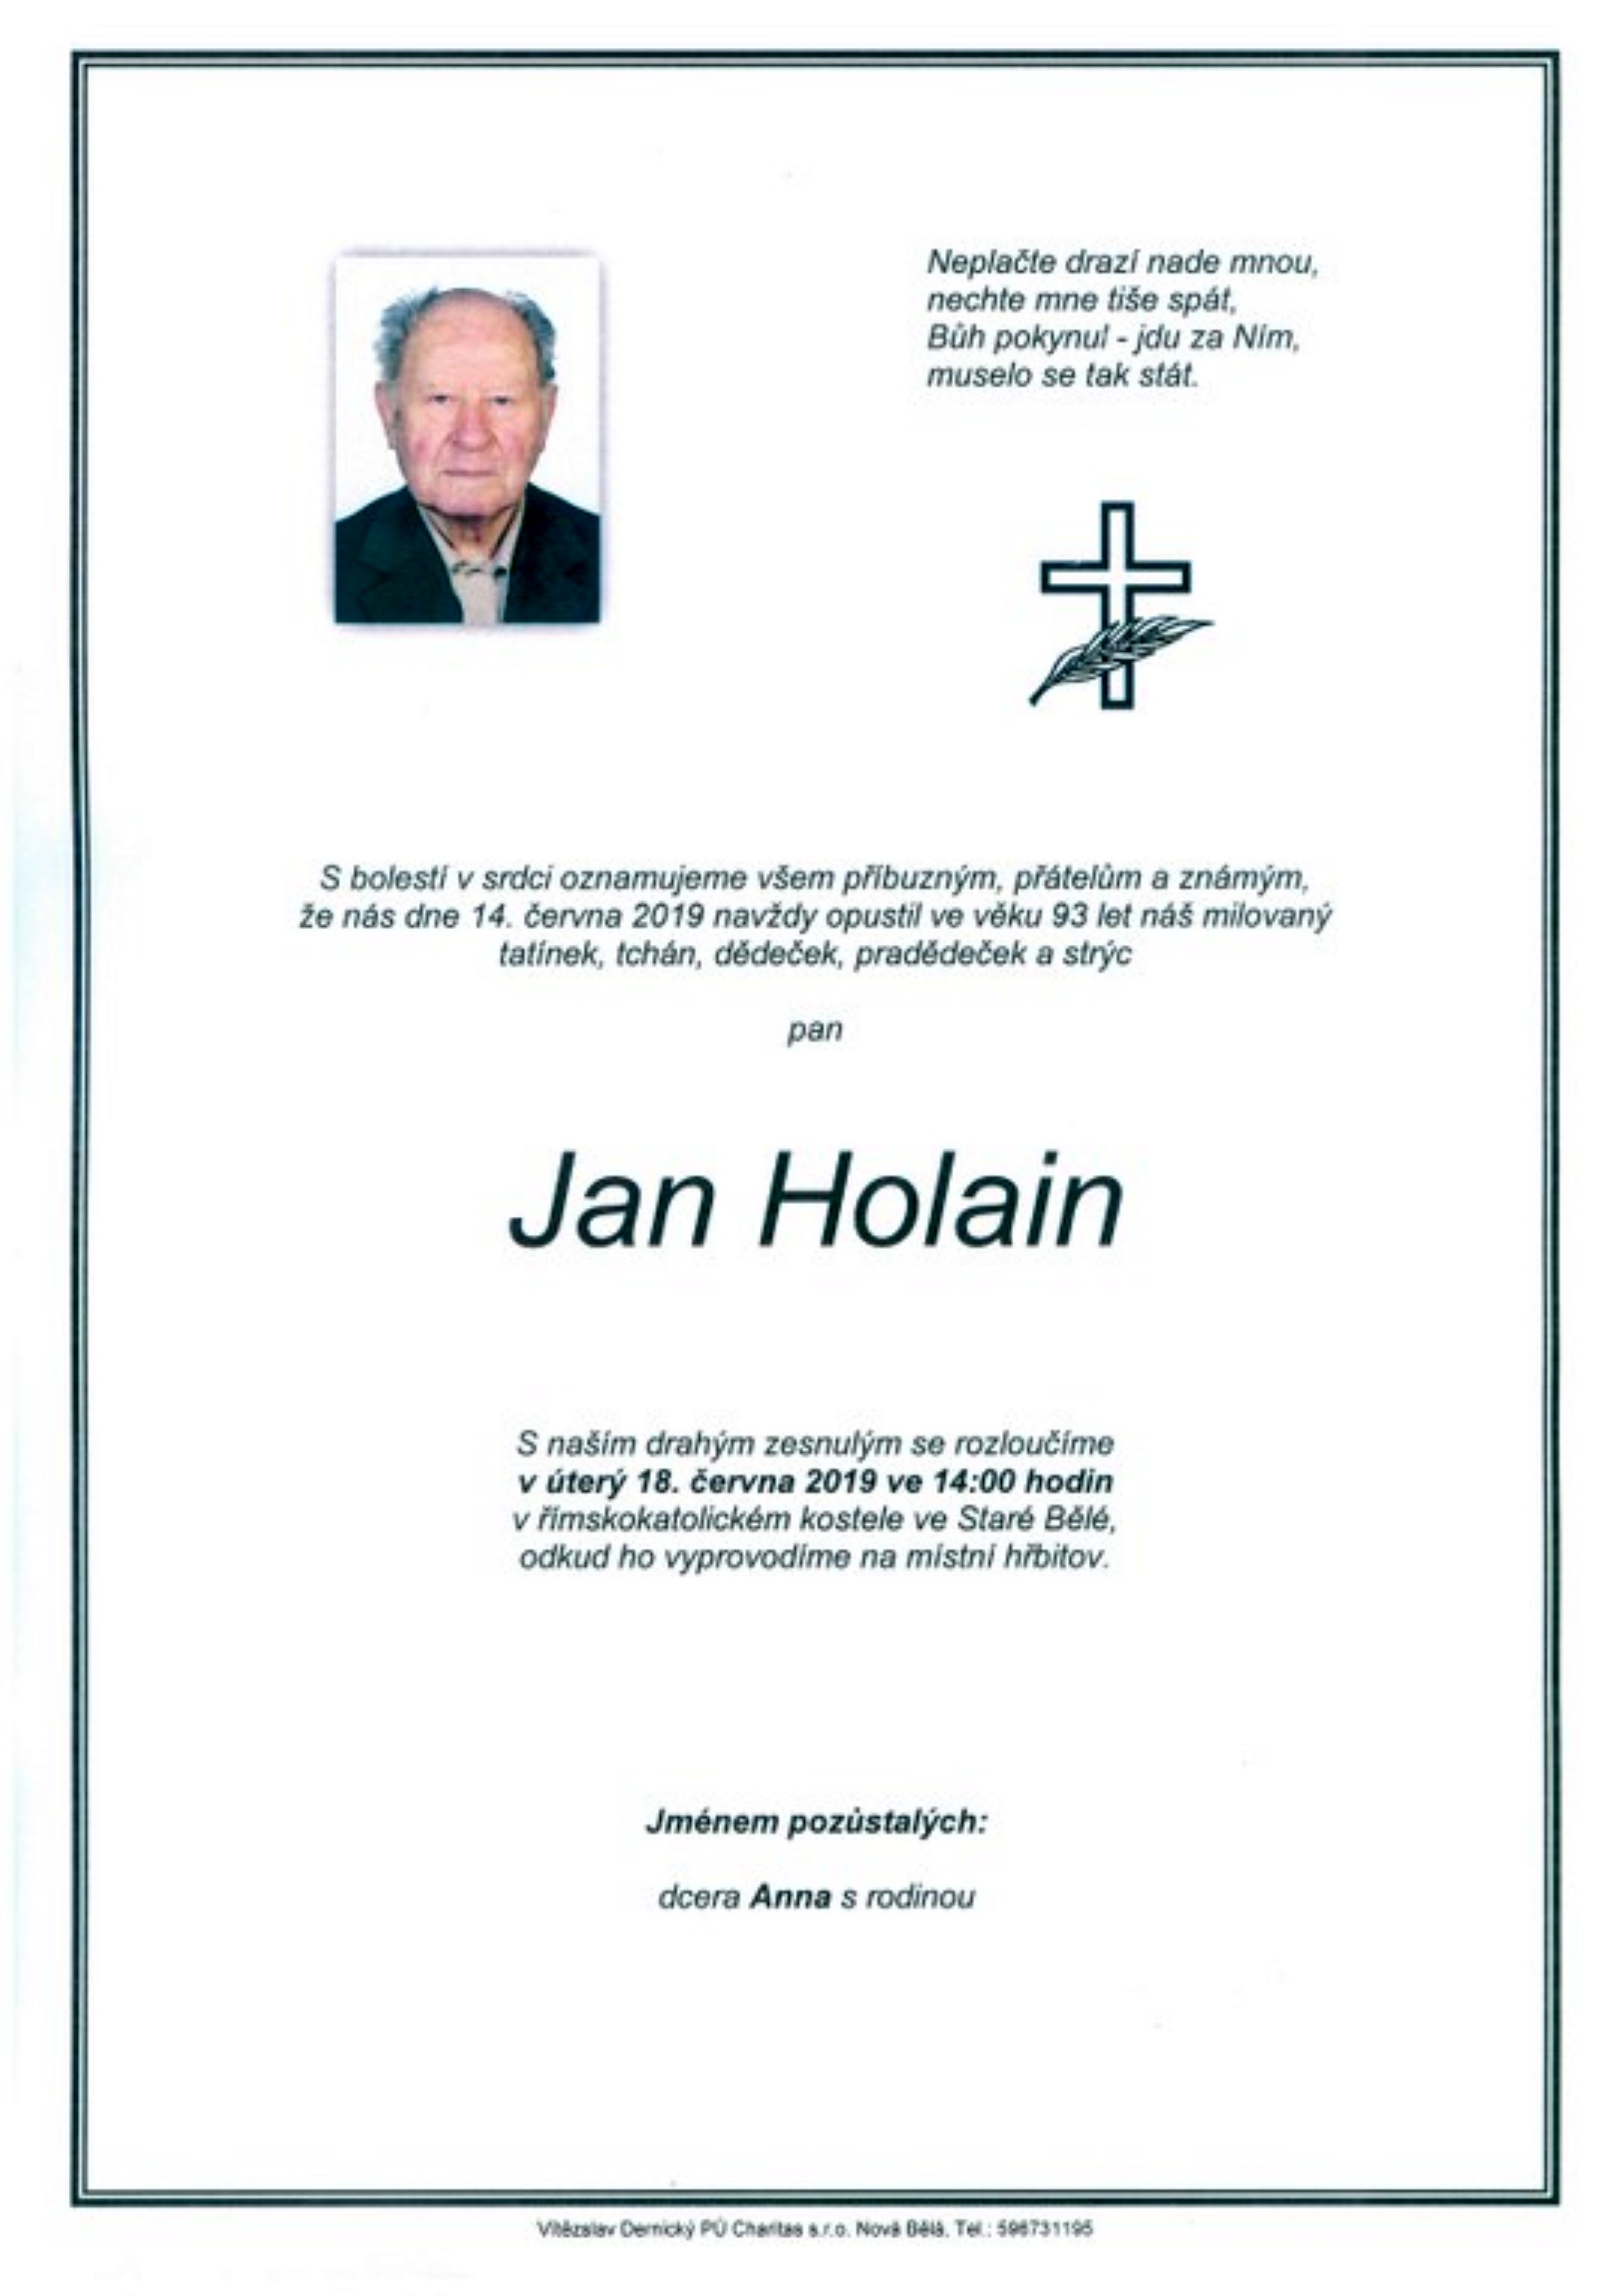 Jan Holain